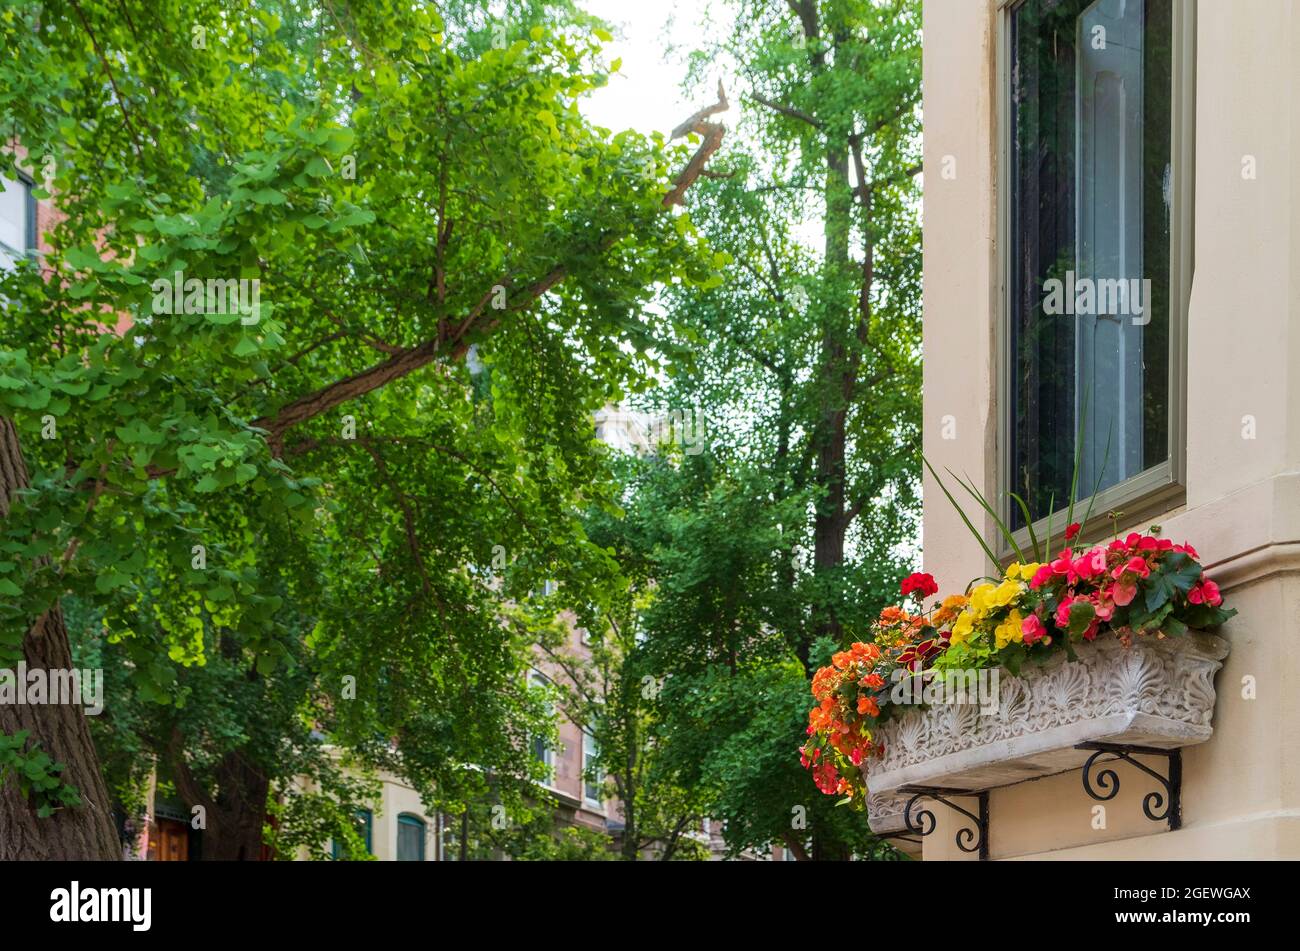 Cajas de ventanas en casas en verano, Rittenhouse Square Neighborhood, Philadelphia, Pennylvania, USA Foto de stock